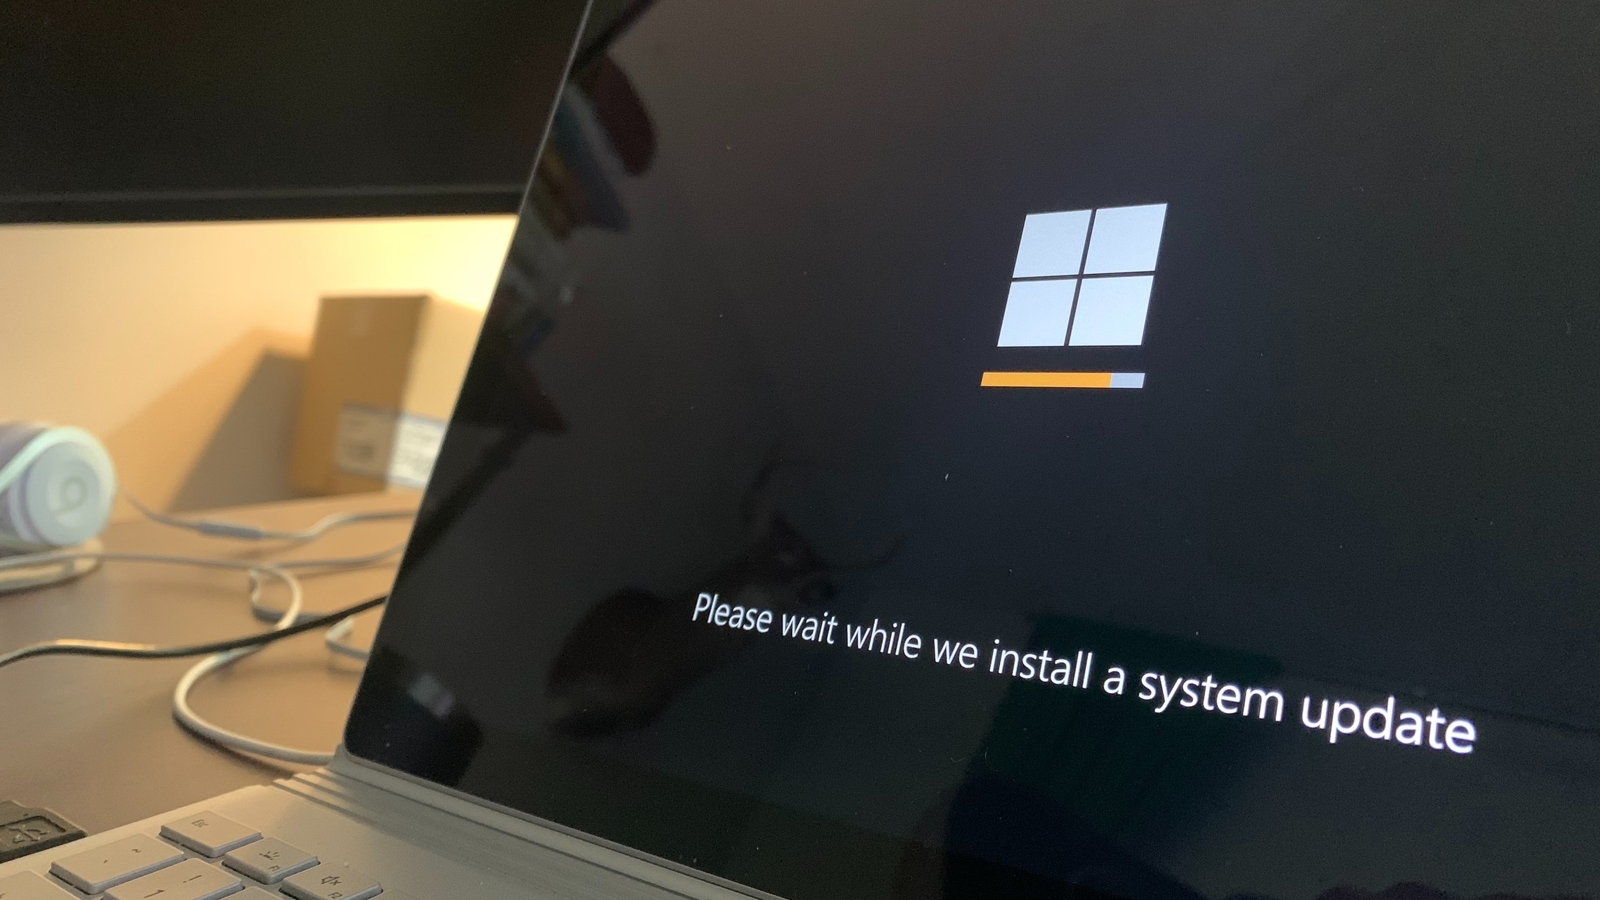 Windows 11 update: Đón đầu xu hướng mới, Windows 11 update sẽ đem đến cho người dùng một trải nghiệm hoàn toàn mới. Với giao diện đẹp mắt và tính năng thông minh, hệ điều hành mới sẽ giúp bạn làm việc một cách hiệu quả hơn và đơn giản hóa quá trình sử dụng máy tính của bạn. Cùng nâng cấp lên Windows 11 để trải nghiệm ngay hôm nay!